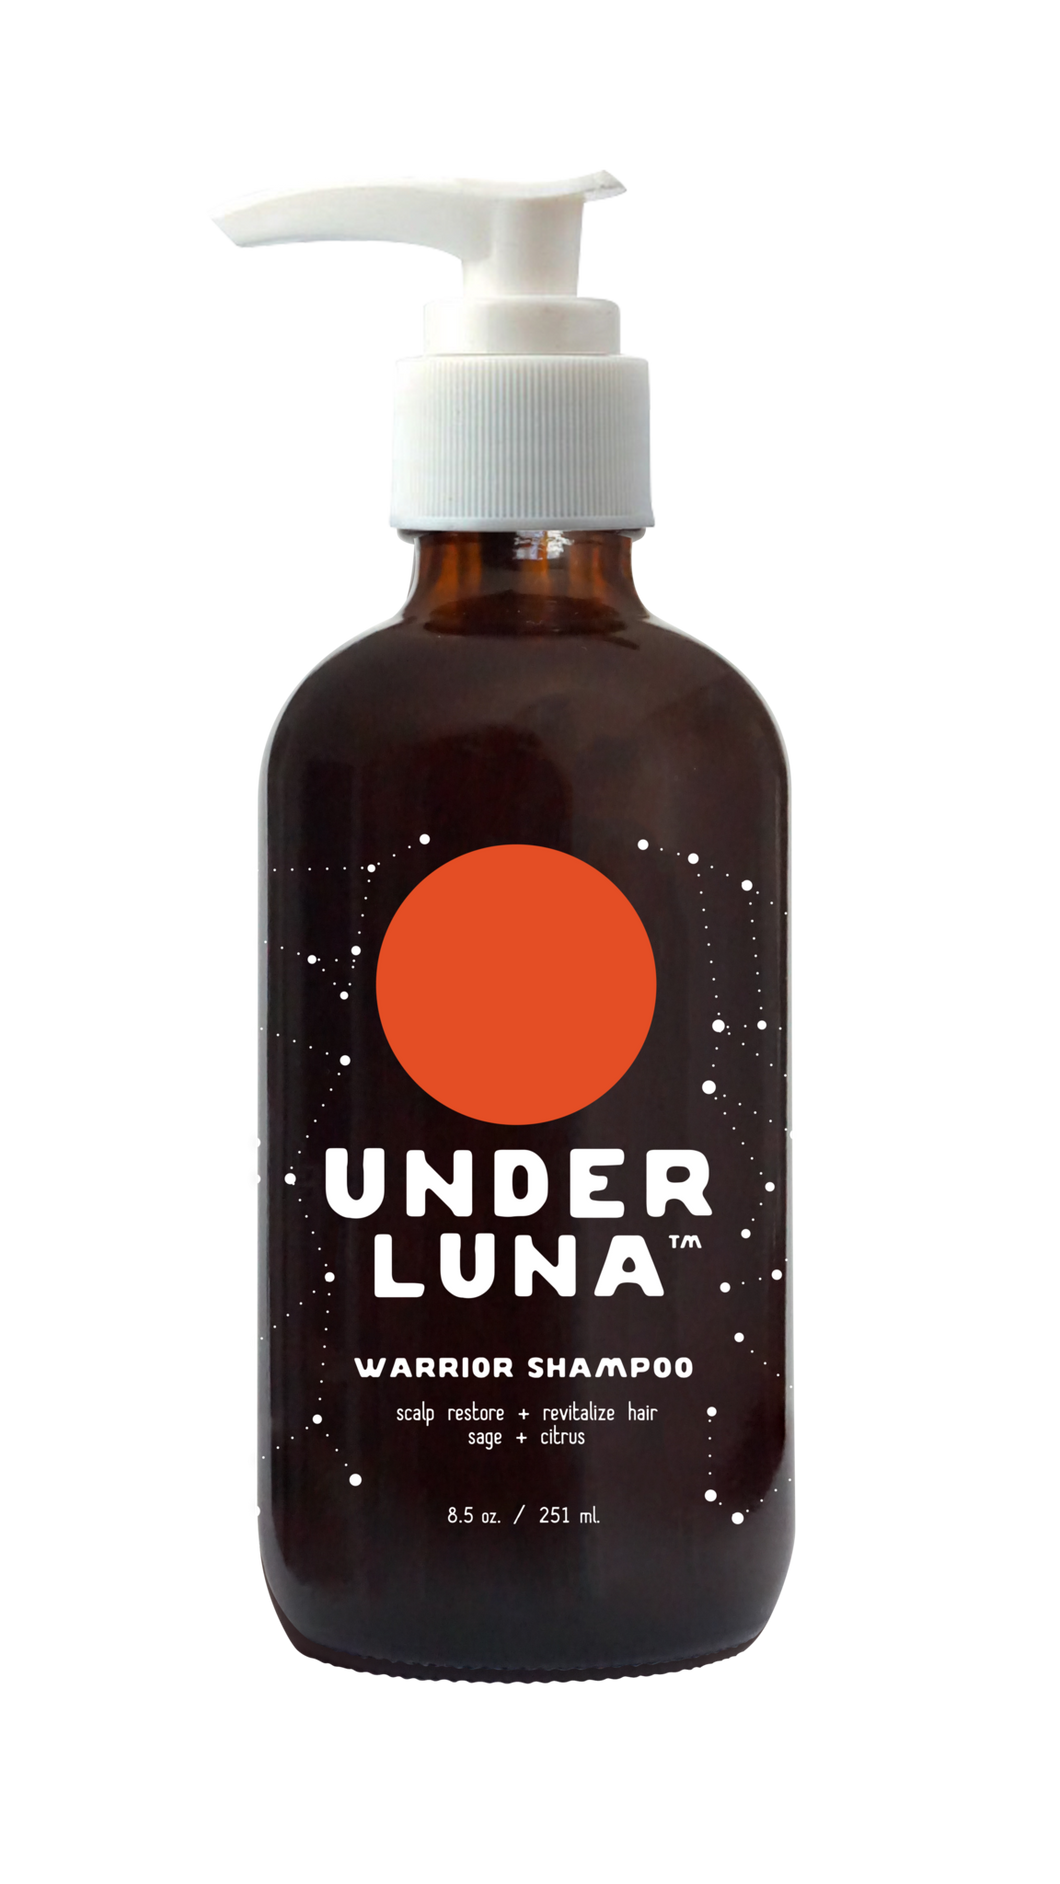 Warrior Shampoo by Under Luna to Restore + Revitalize Hair